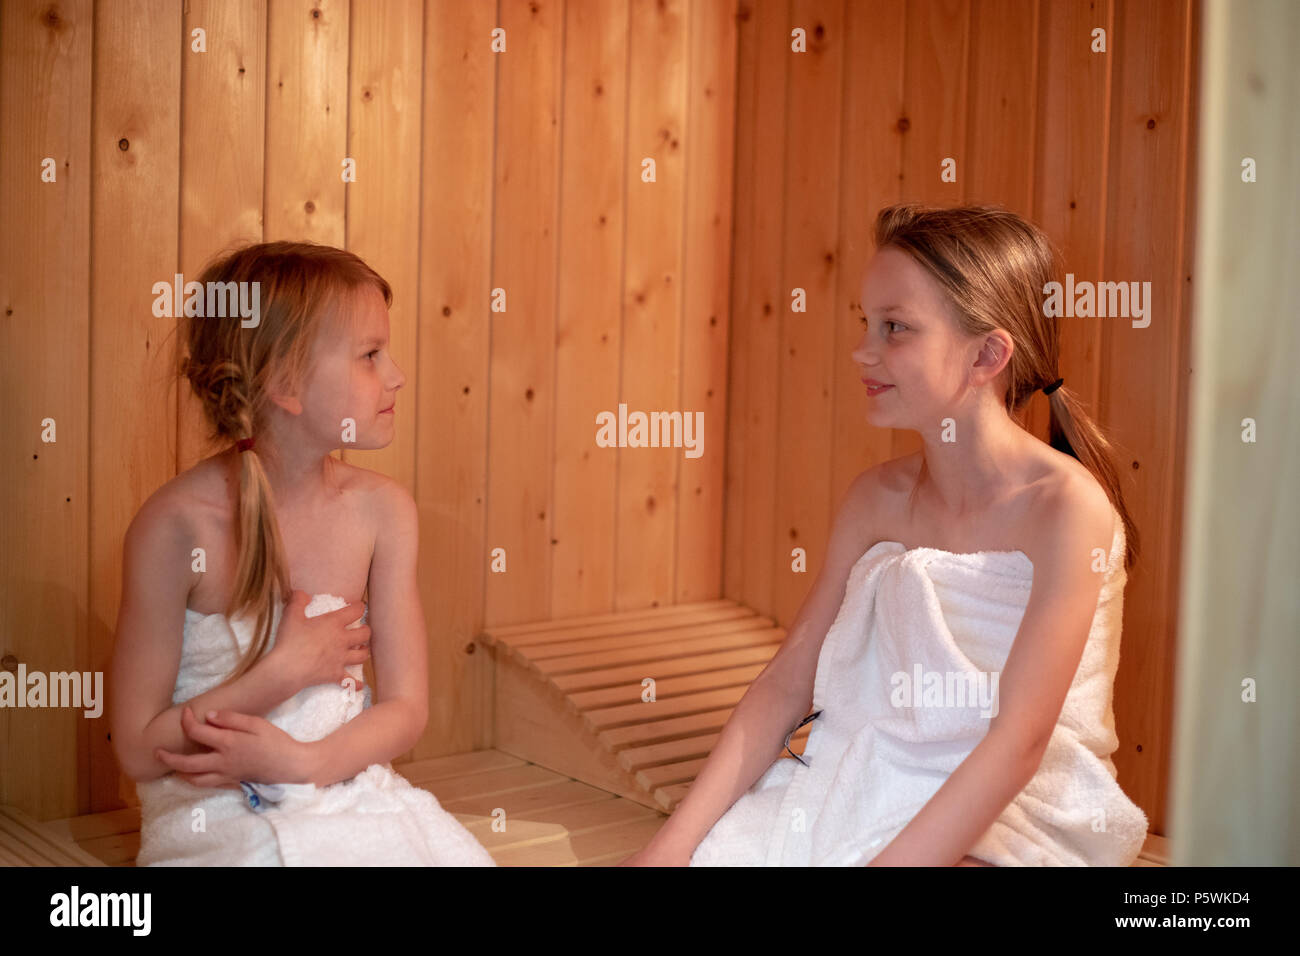 Due ragazze hanno essi stessi avvolti in asciugamani e sono seduti in una sauna finlandese Foto Stock